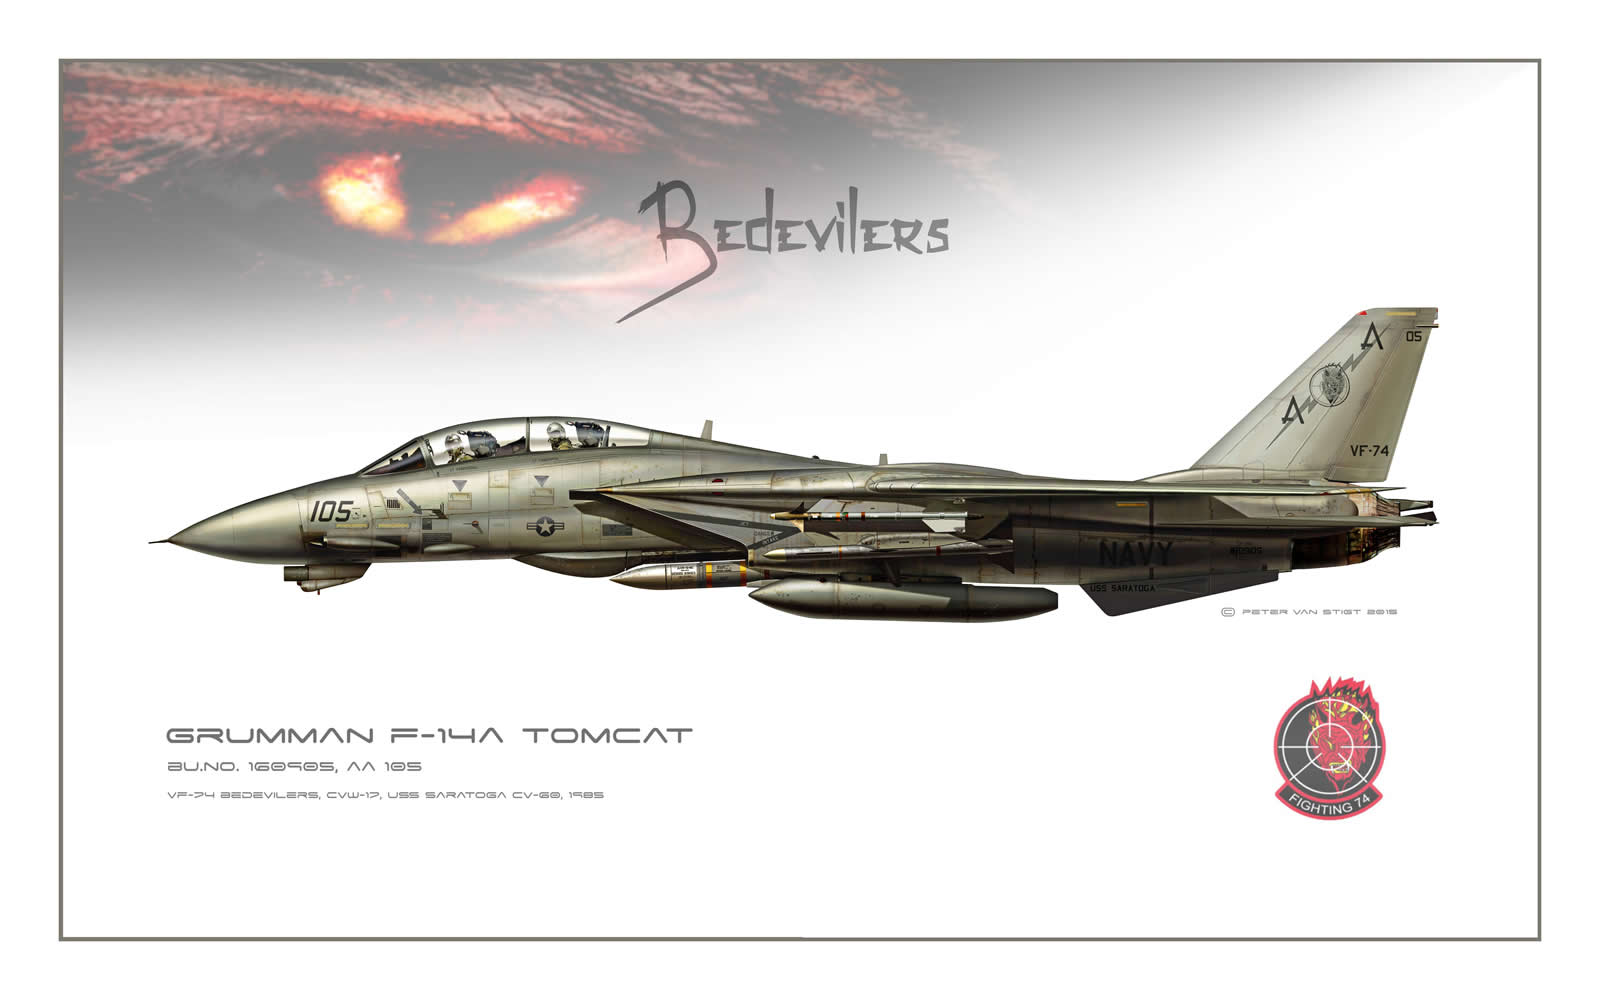 VF-74 Bedevilers F-14 Tomcat Profile